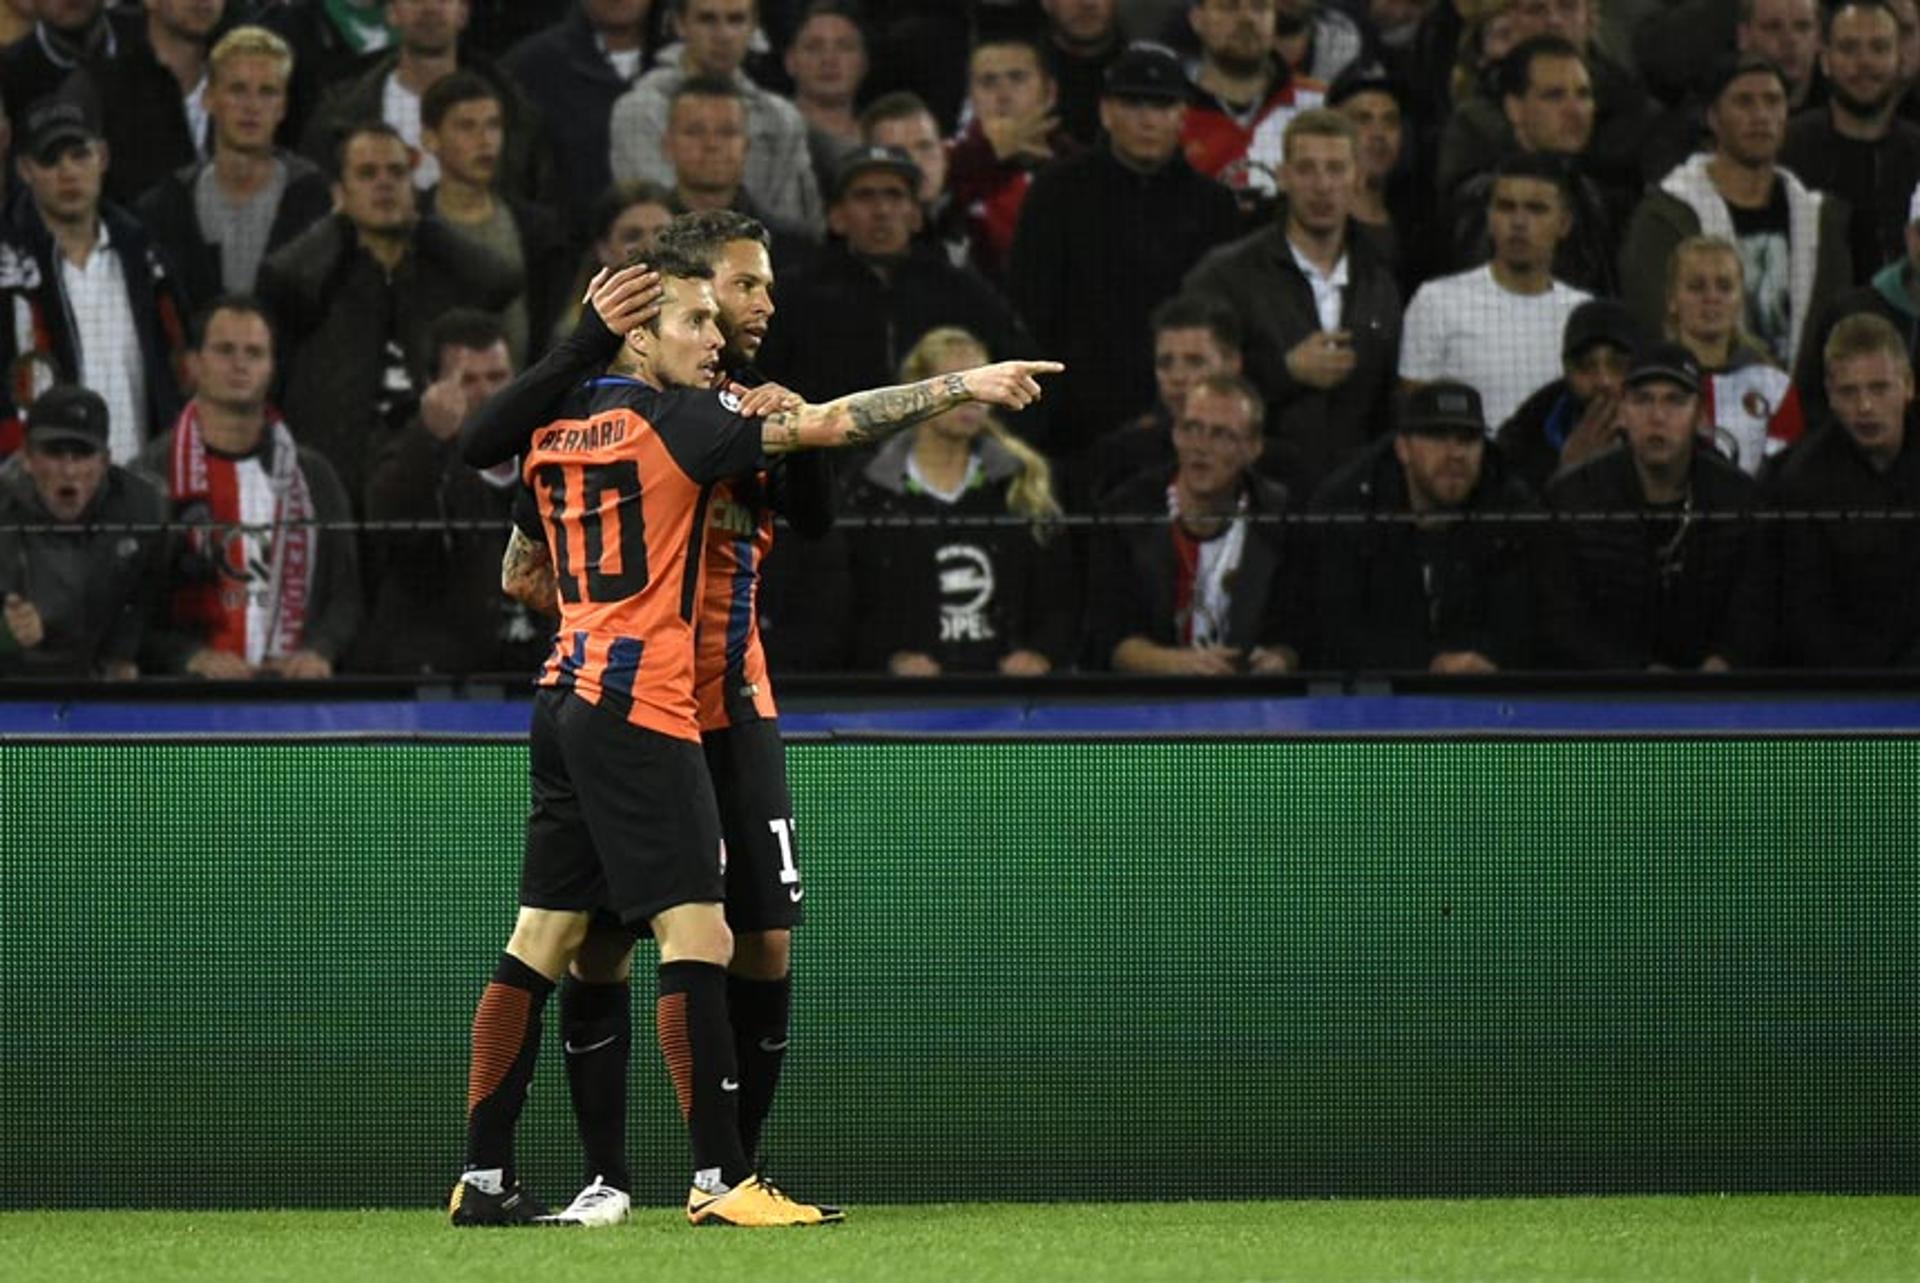 Bernard - O atacante foi o grande destaque na vitória do Shakhtar Donetsk sobre o Feyenoord, marcando os dois gols do triunfo por 2 a 1.